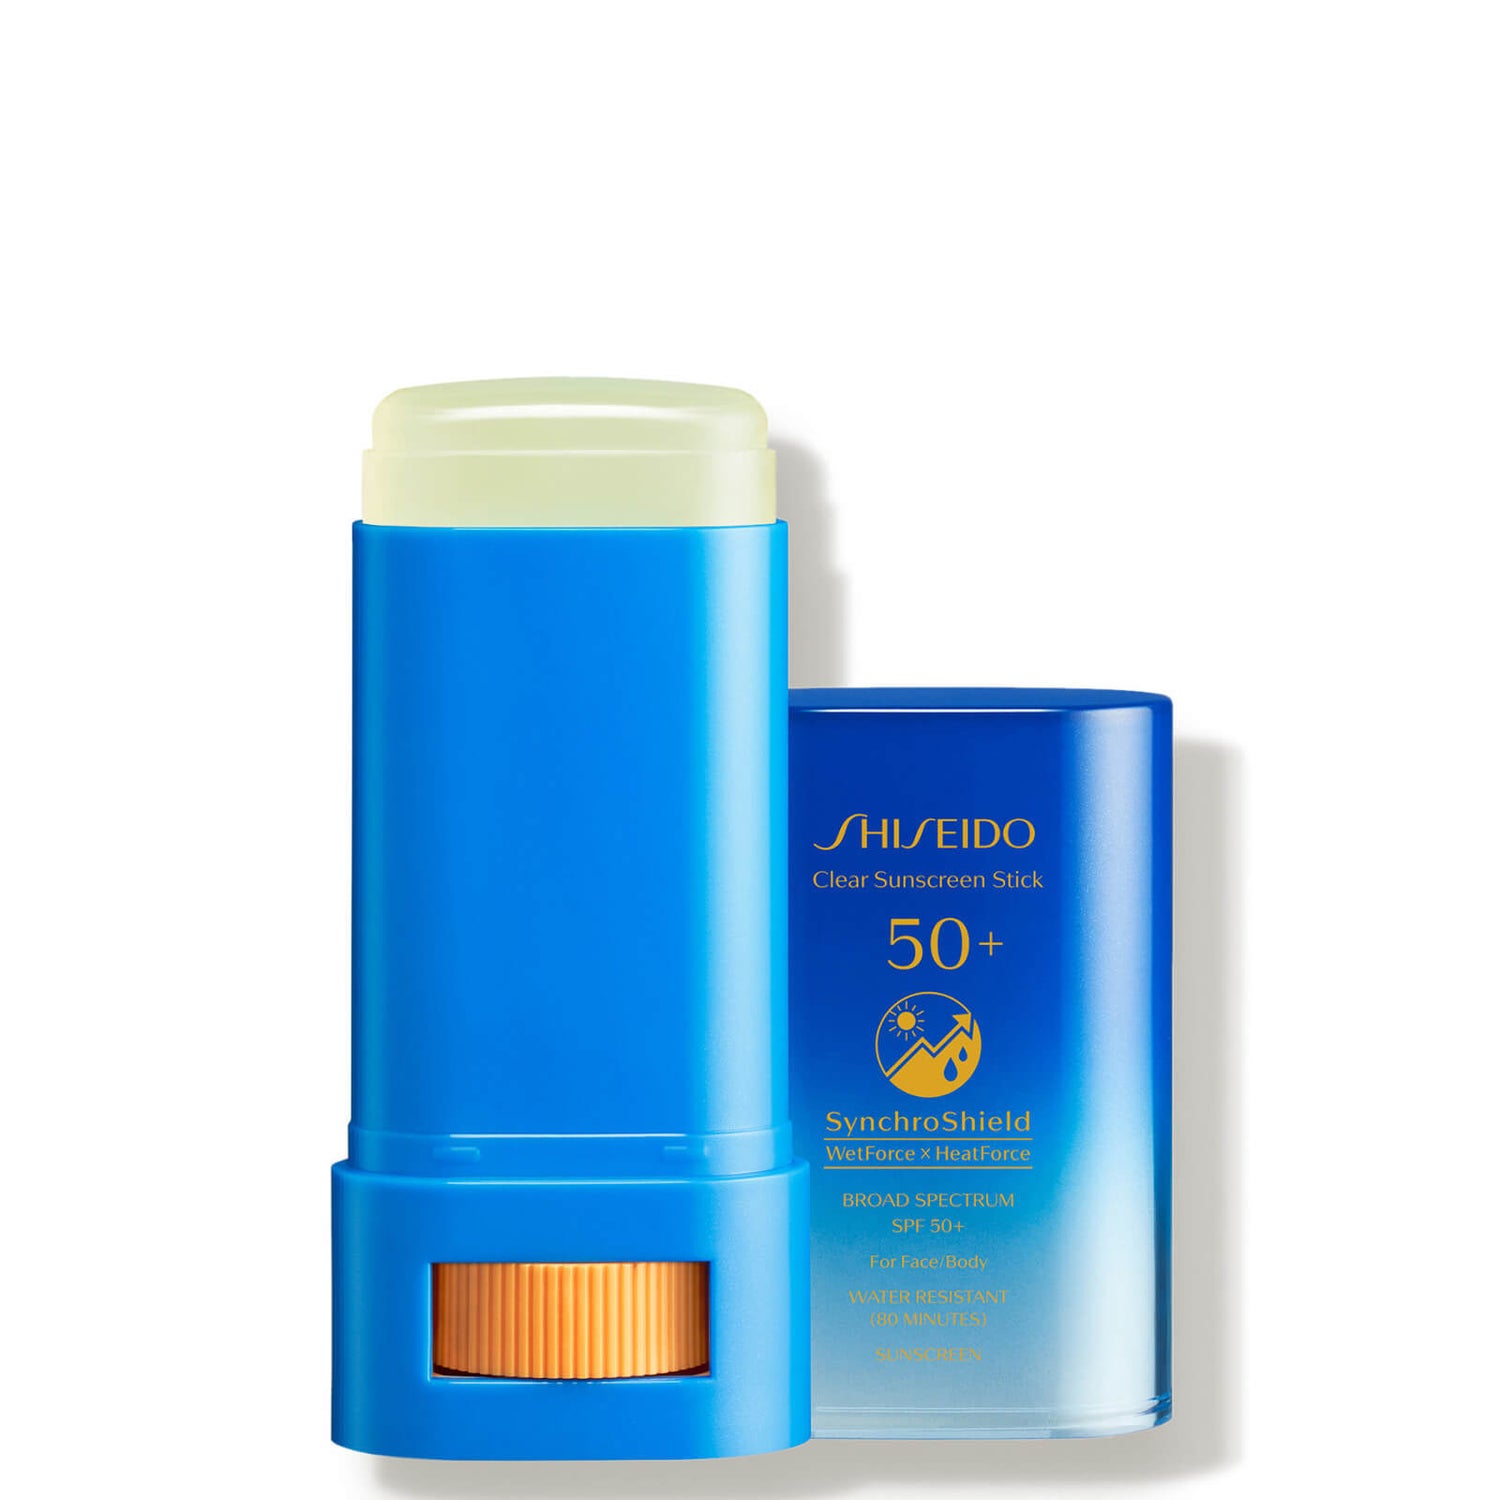 Shiseido Clear Sunscreen Stick SPF 50 20 g.